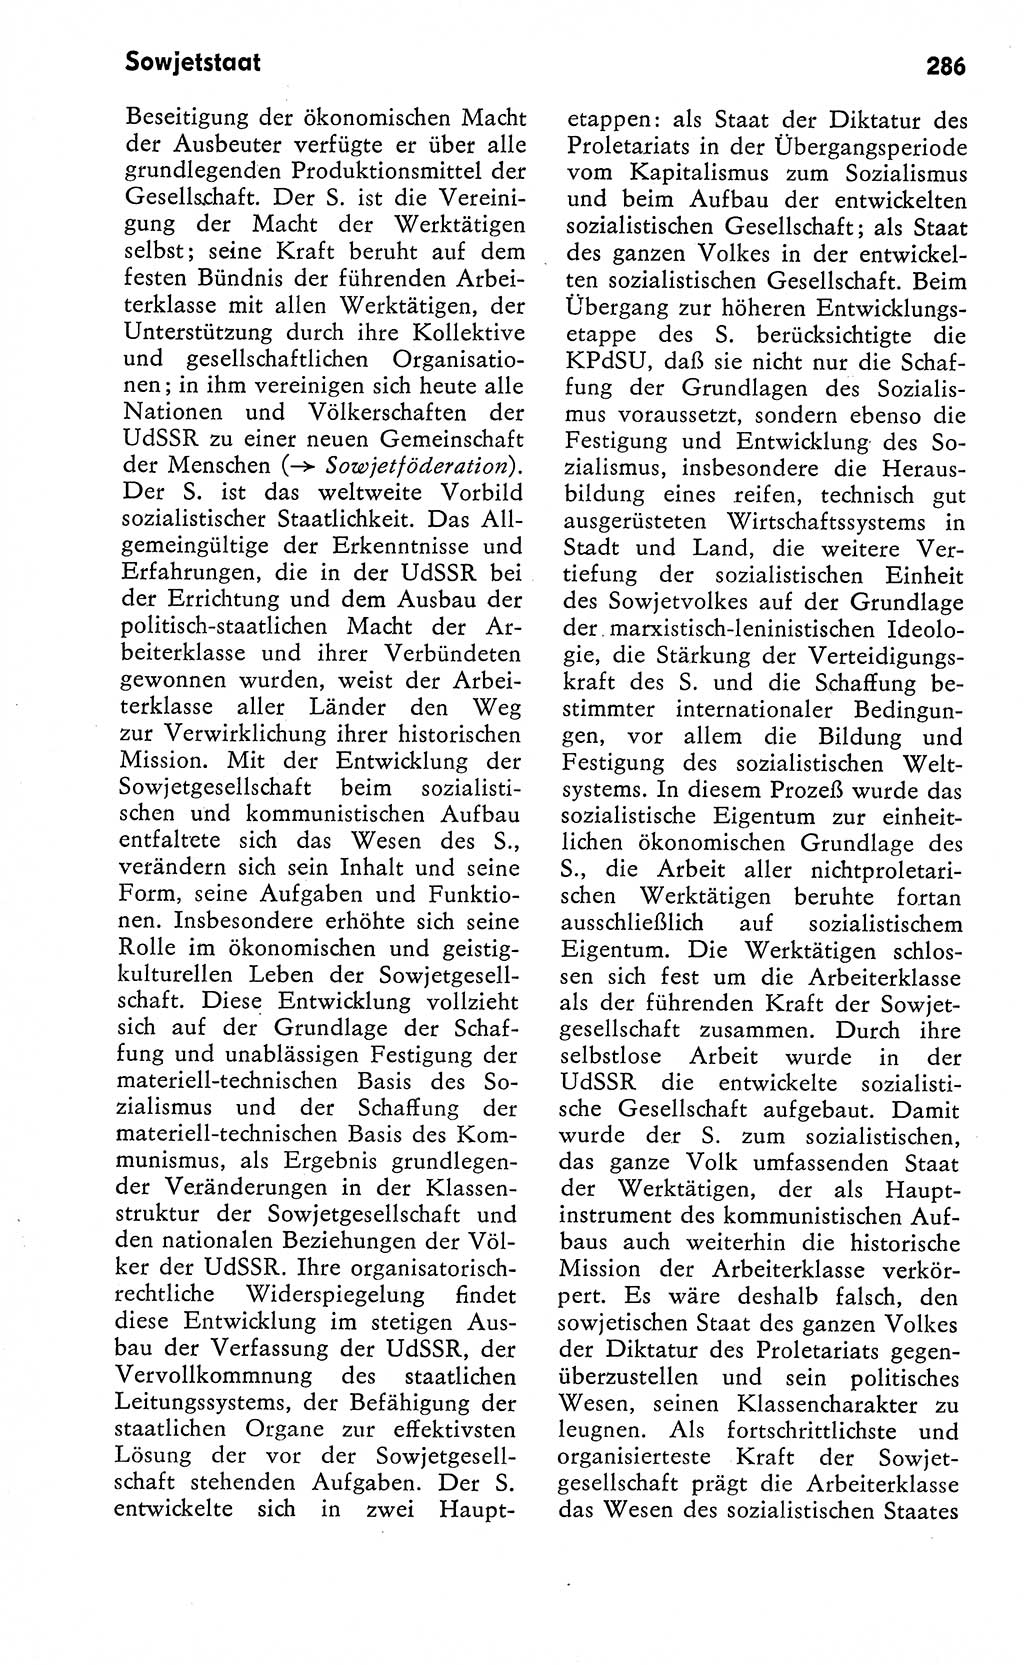 Wörterbuch zum sozialistischen Staat [Deutsche Demokratische Republik (DDR)] 1974, Seite 286 (Wb. soz. St. DDR 1974, S. 286)